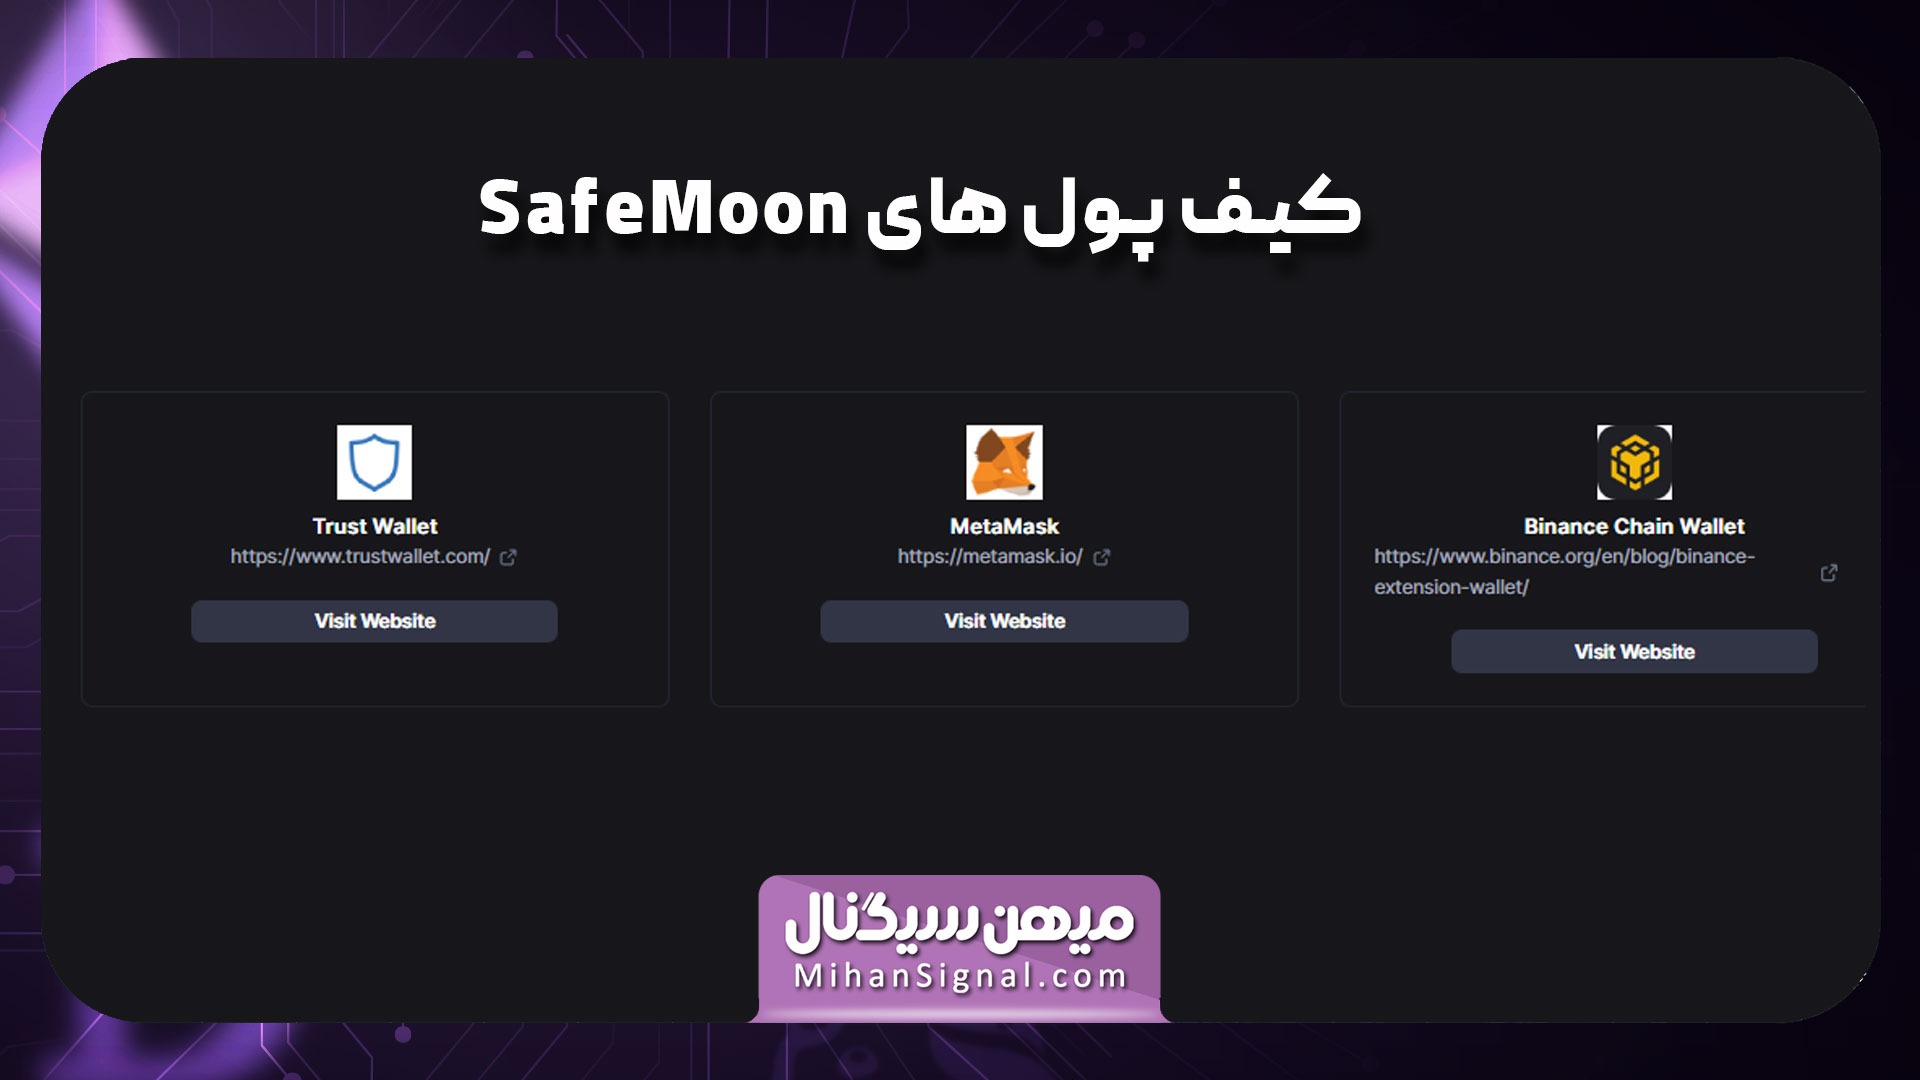 بهترین کیف پول های ارز سیف مون (SafeMoon) کدامند؟